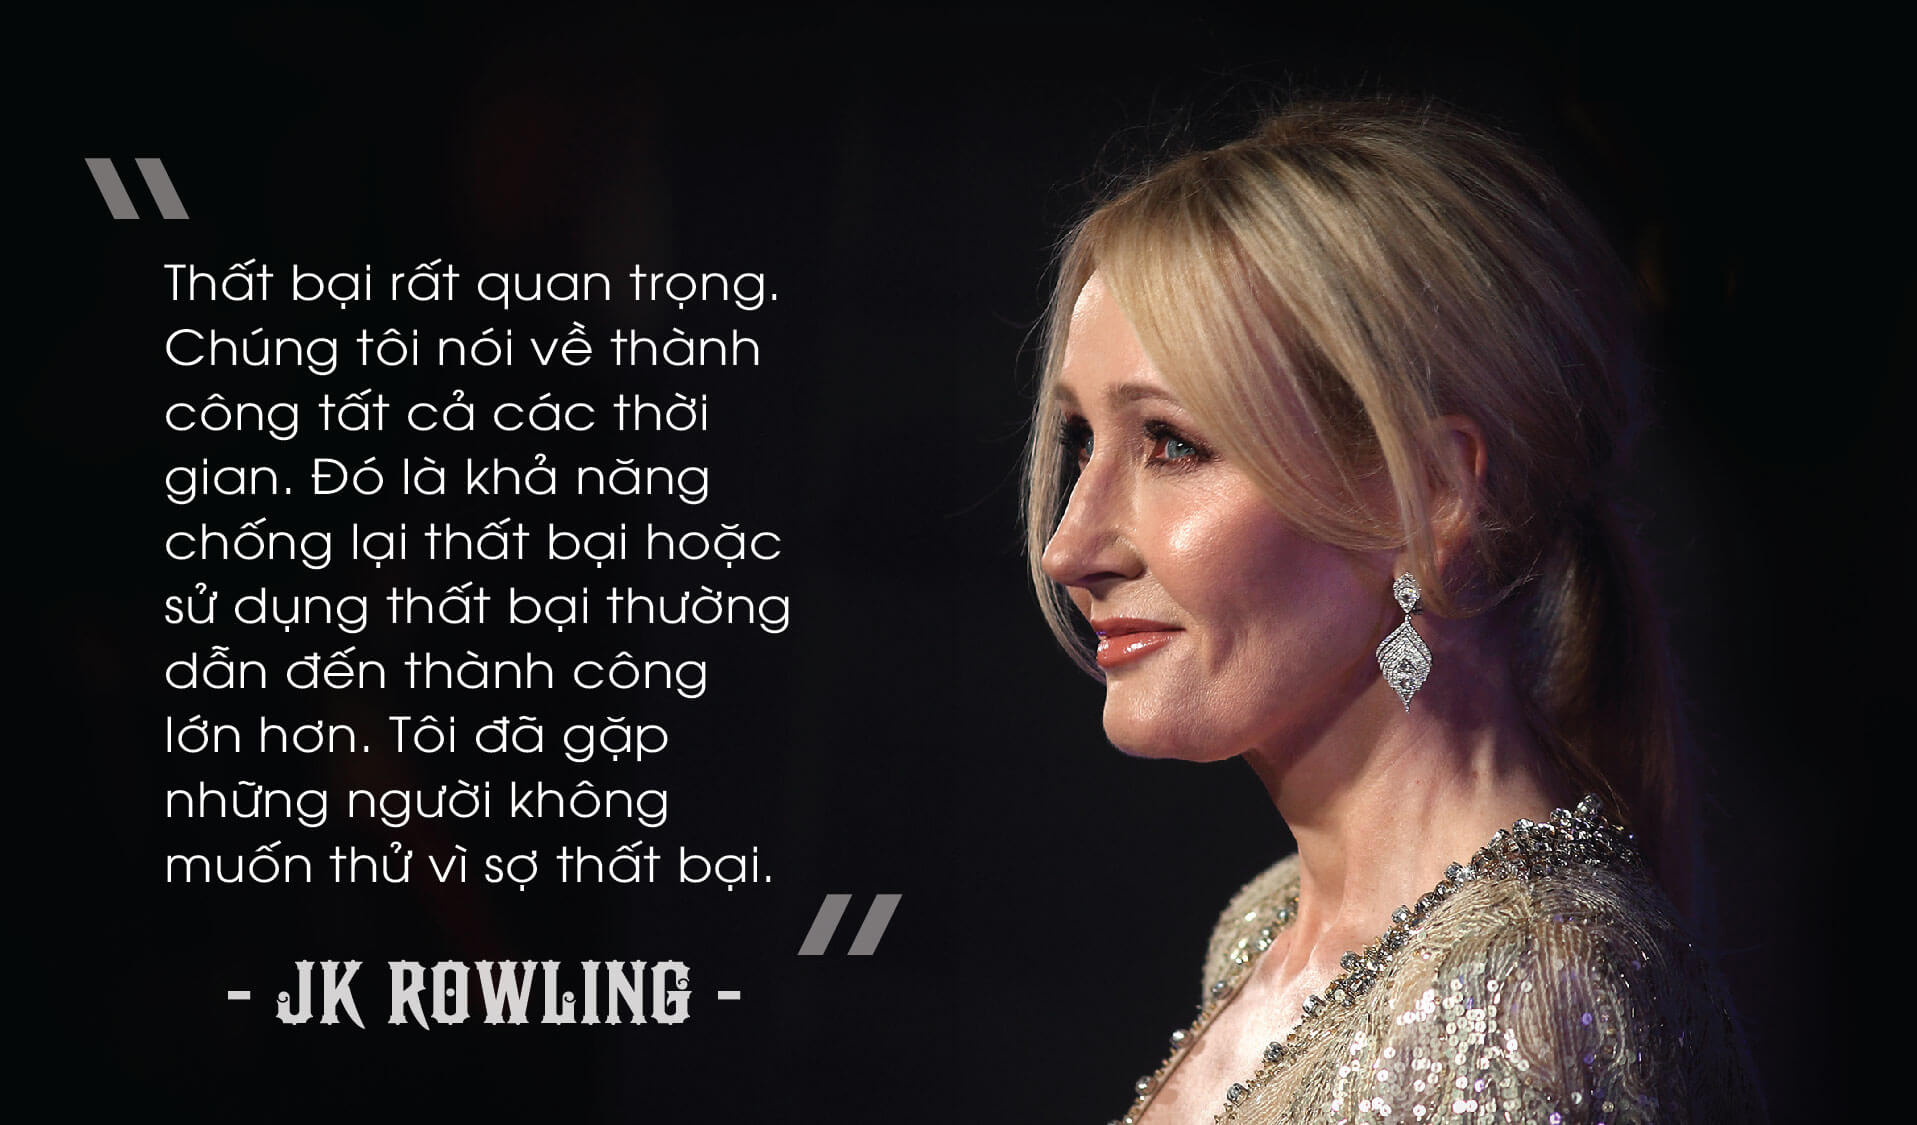 Tiểu sử J.K.Rowling: Tác giả của thế giới phù thủy trong Harry Porter